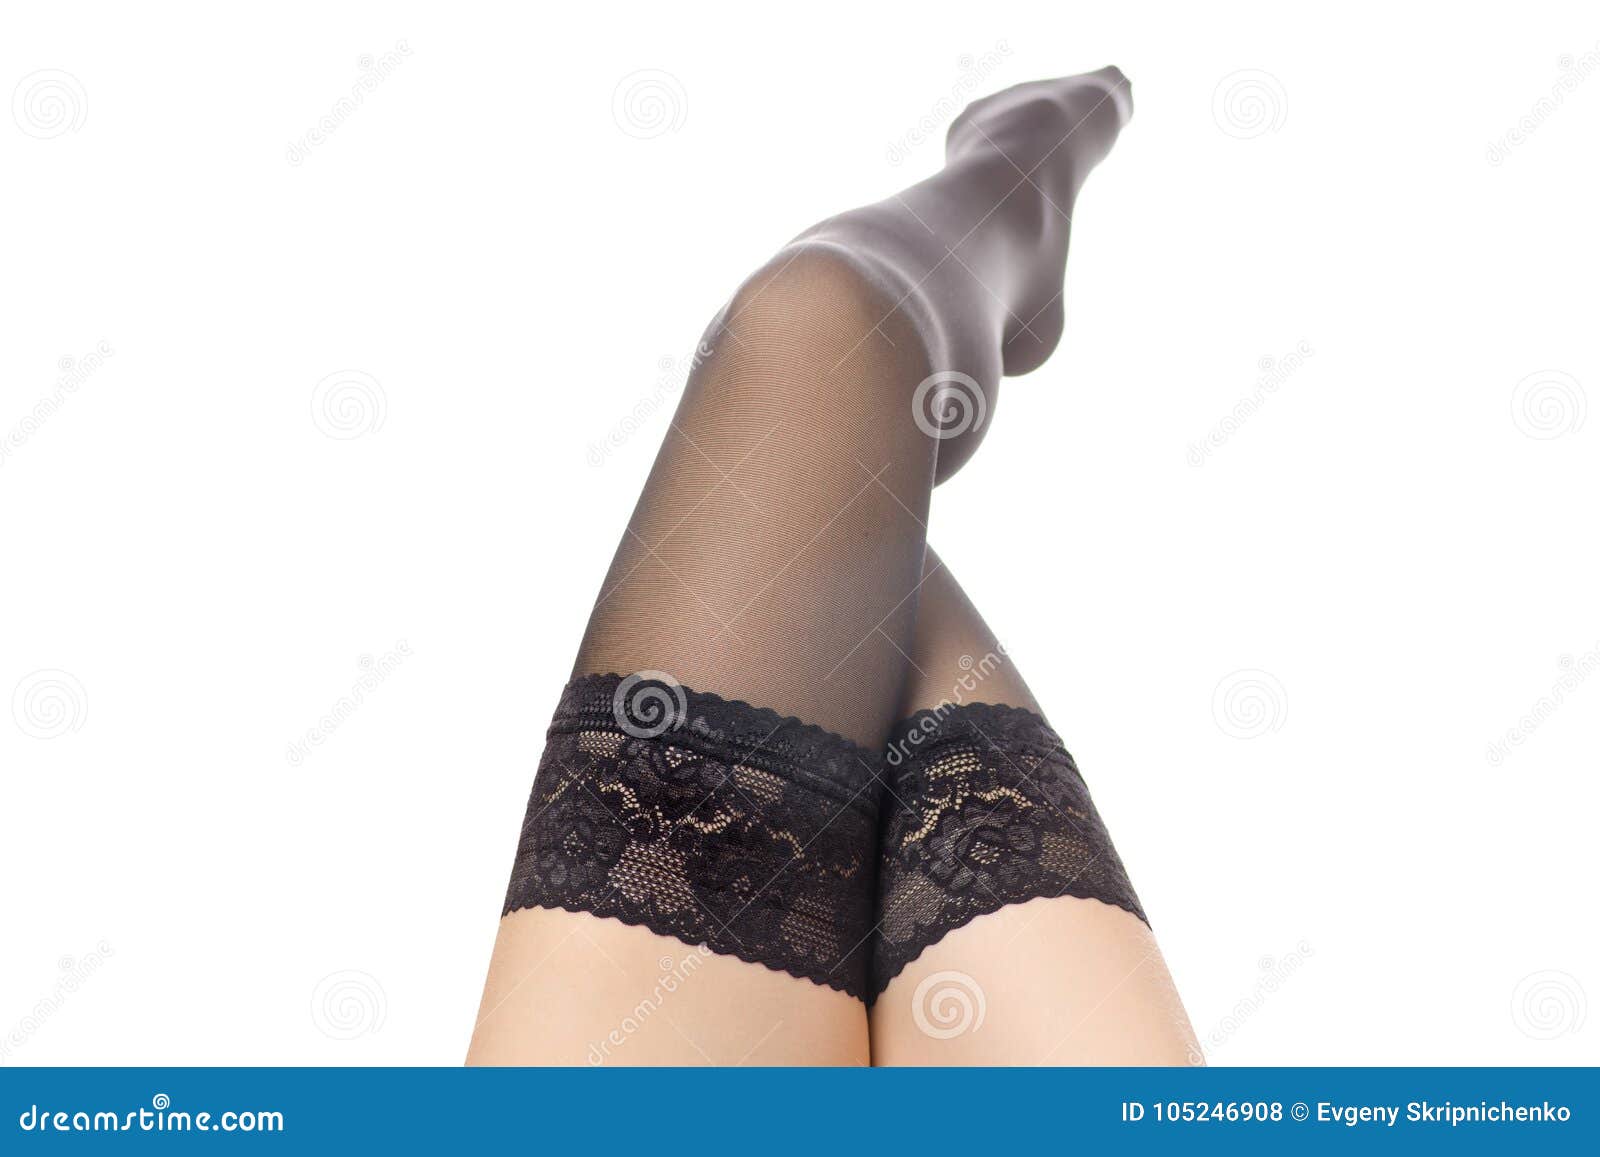 Black and white nylon stockings